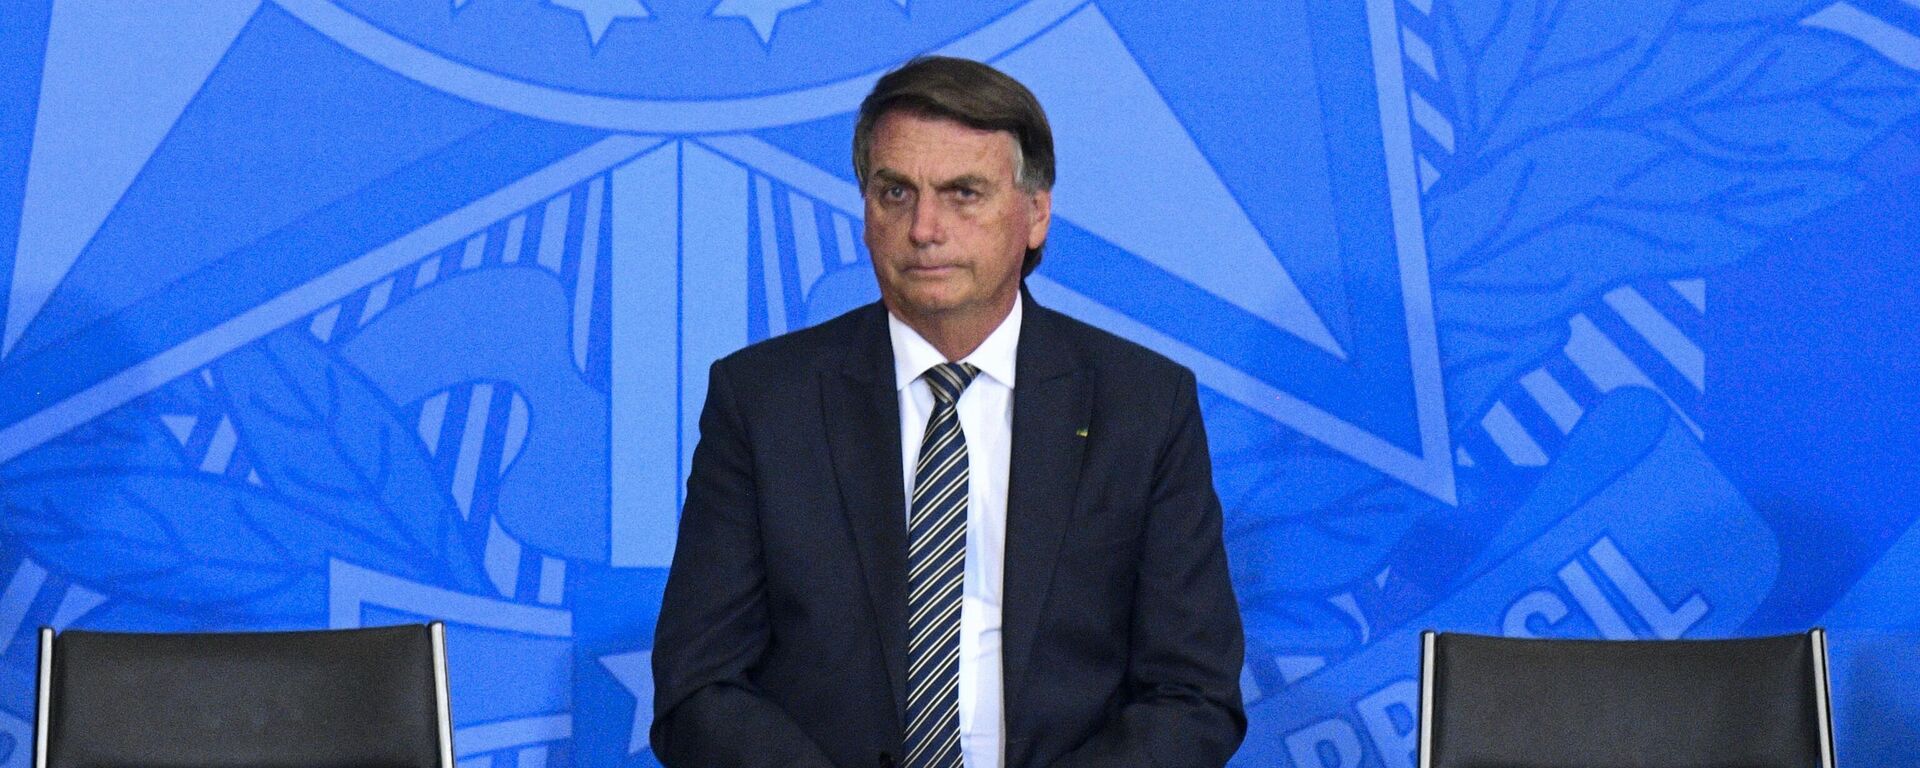 Presidente Jair Bolsonaro (PL) durante encontro com parlamentares em cerimônia Liberdade de Expressão, em 27 de abril de 2022.  - Sputnik Brasil, 1920, 27.04.2022